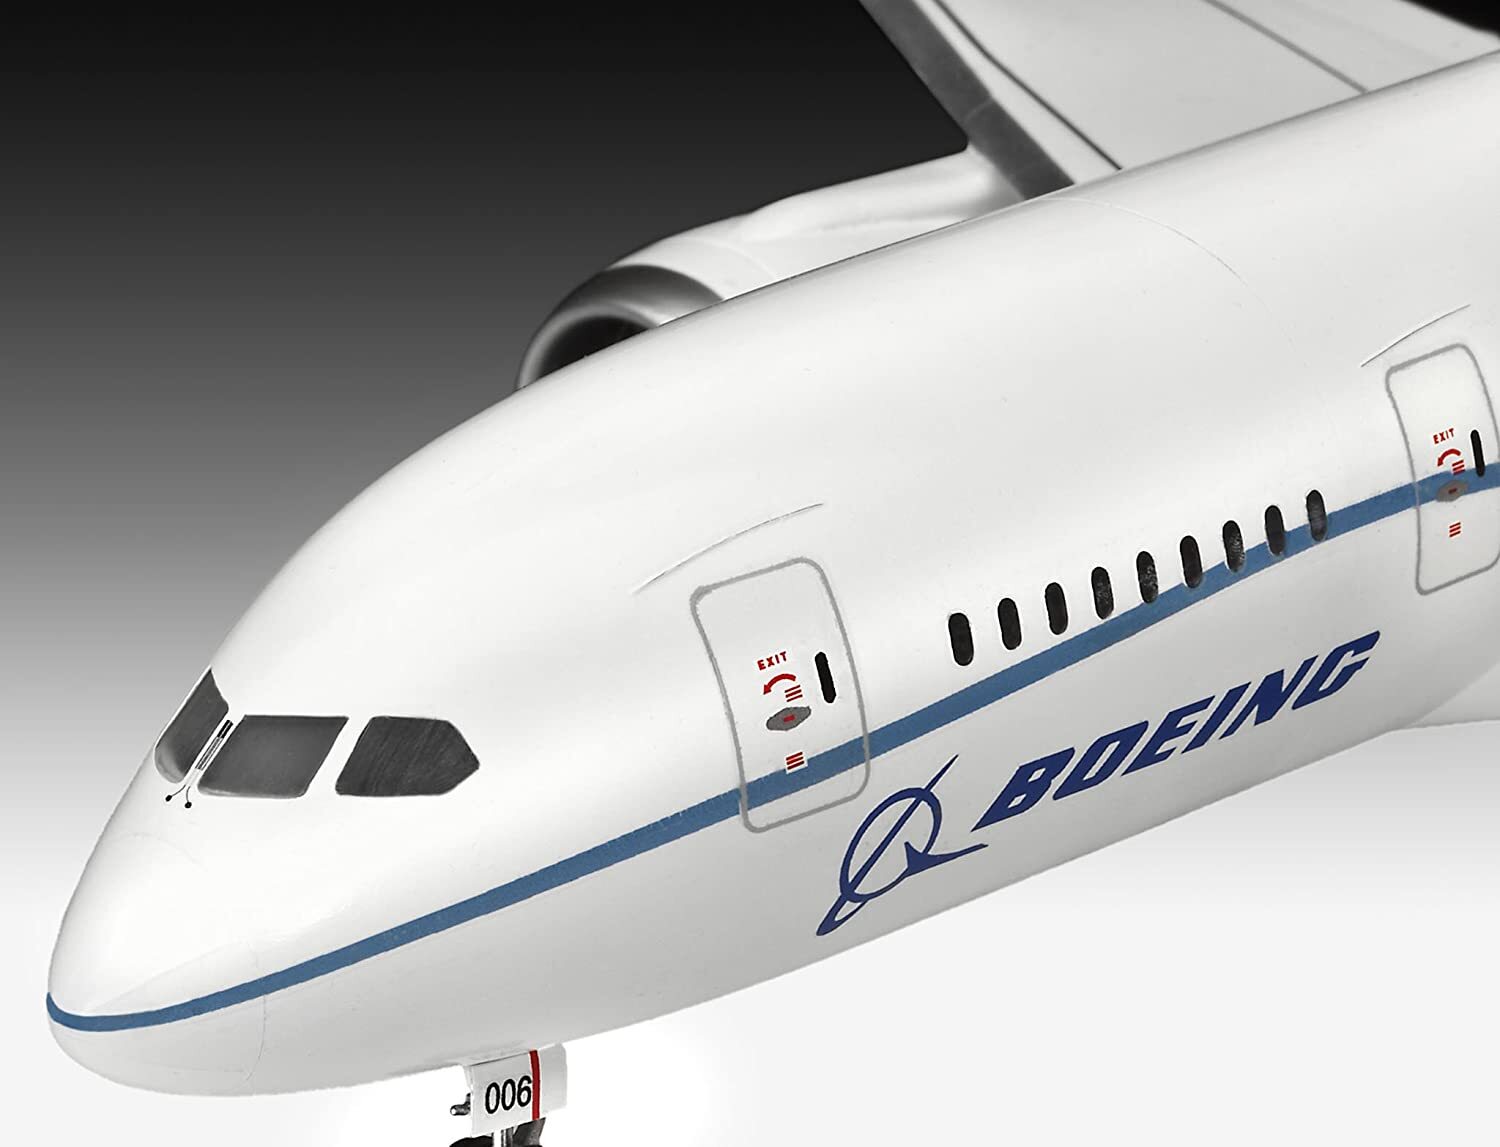 Revell Modellbausatz Flugzeug 1:144 - Boeing 787-8 'Dreamliner' 1:144, Level 5, originalgetreue Nachbildung mit vielen Details